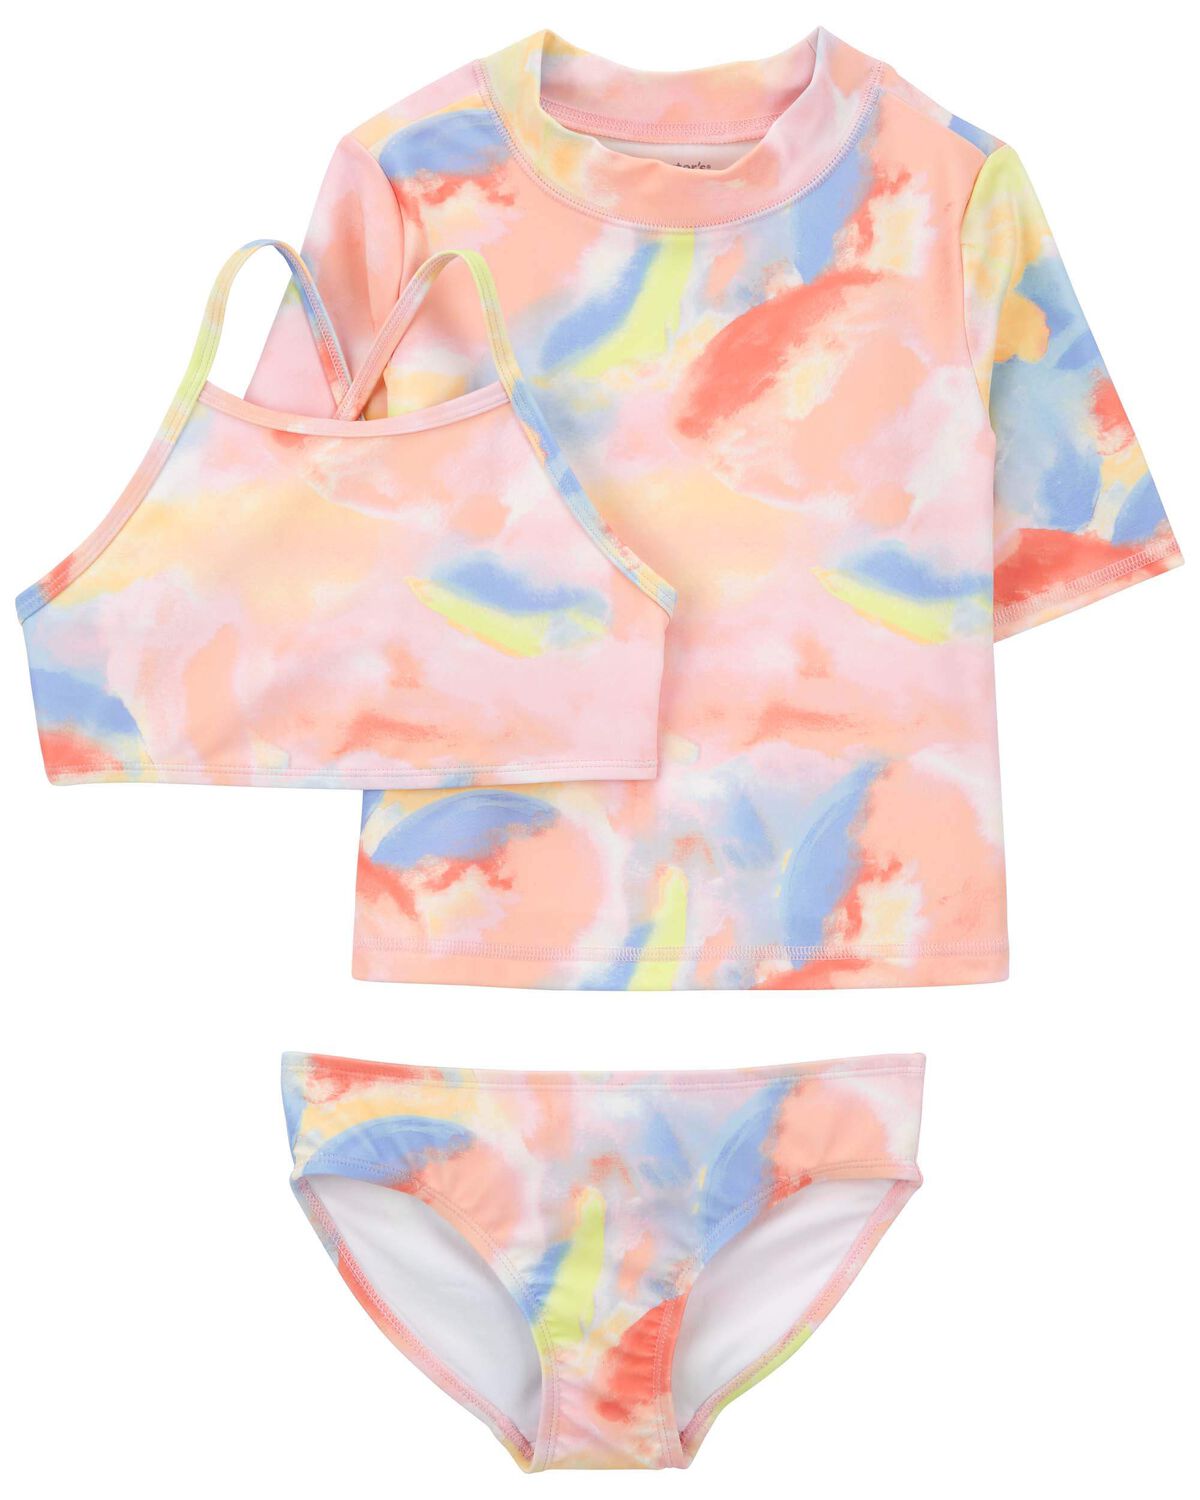 Set 2021 Teenager Girls Tie Dyeing Swimwear For Children Boutique